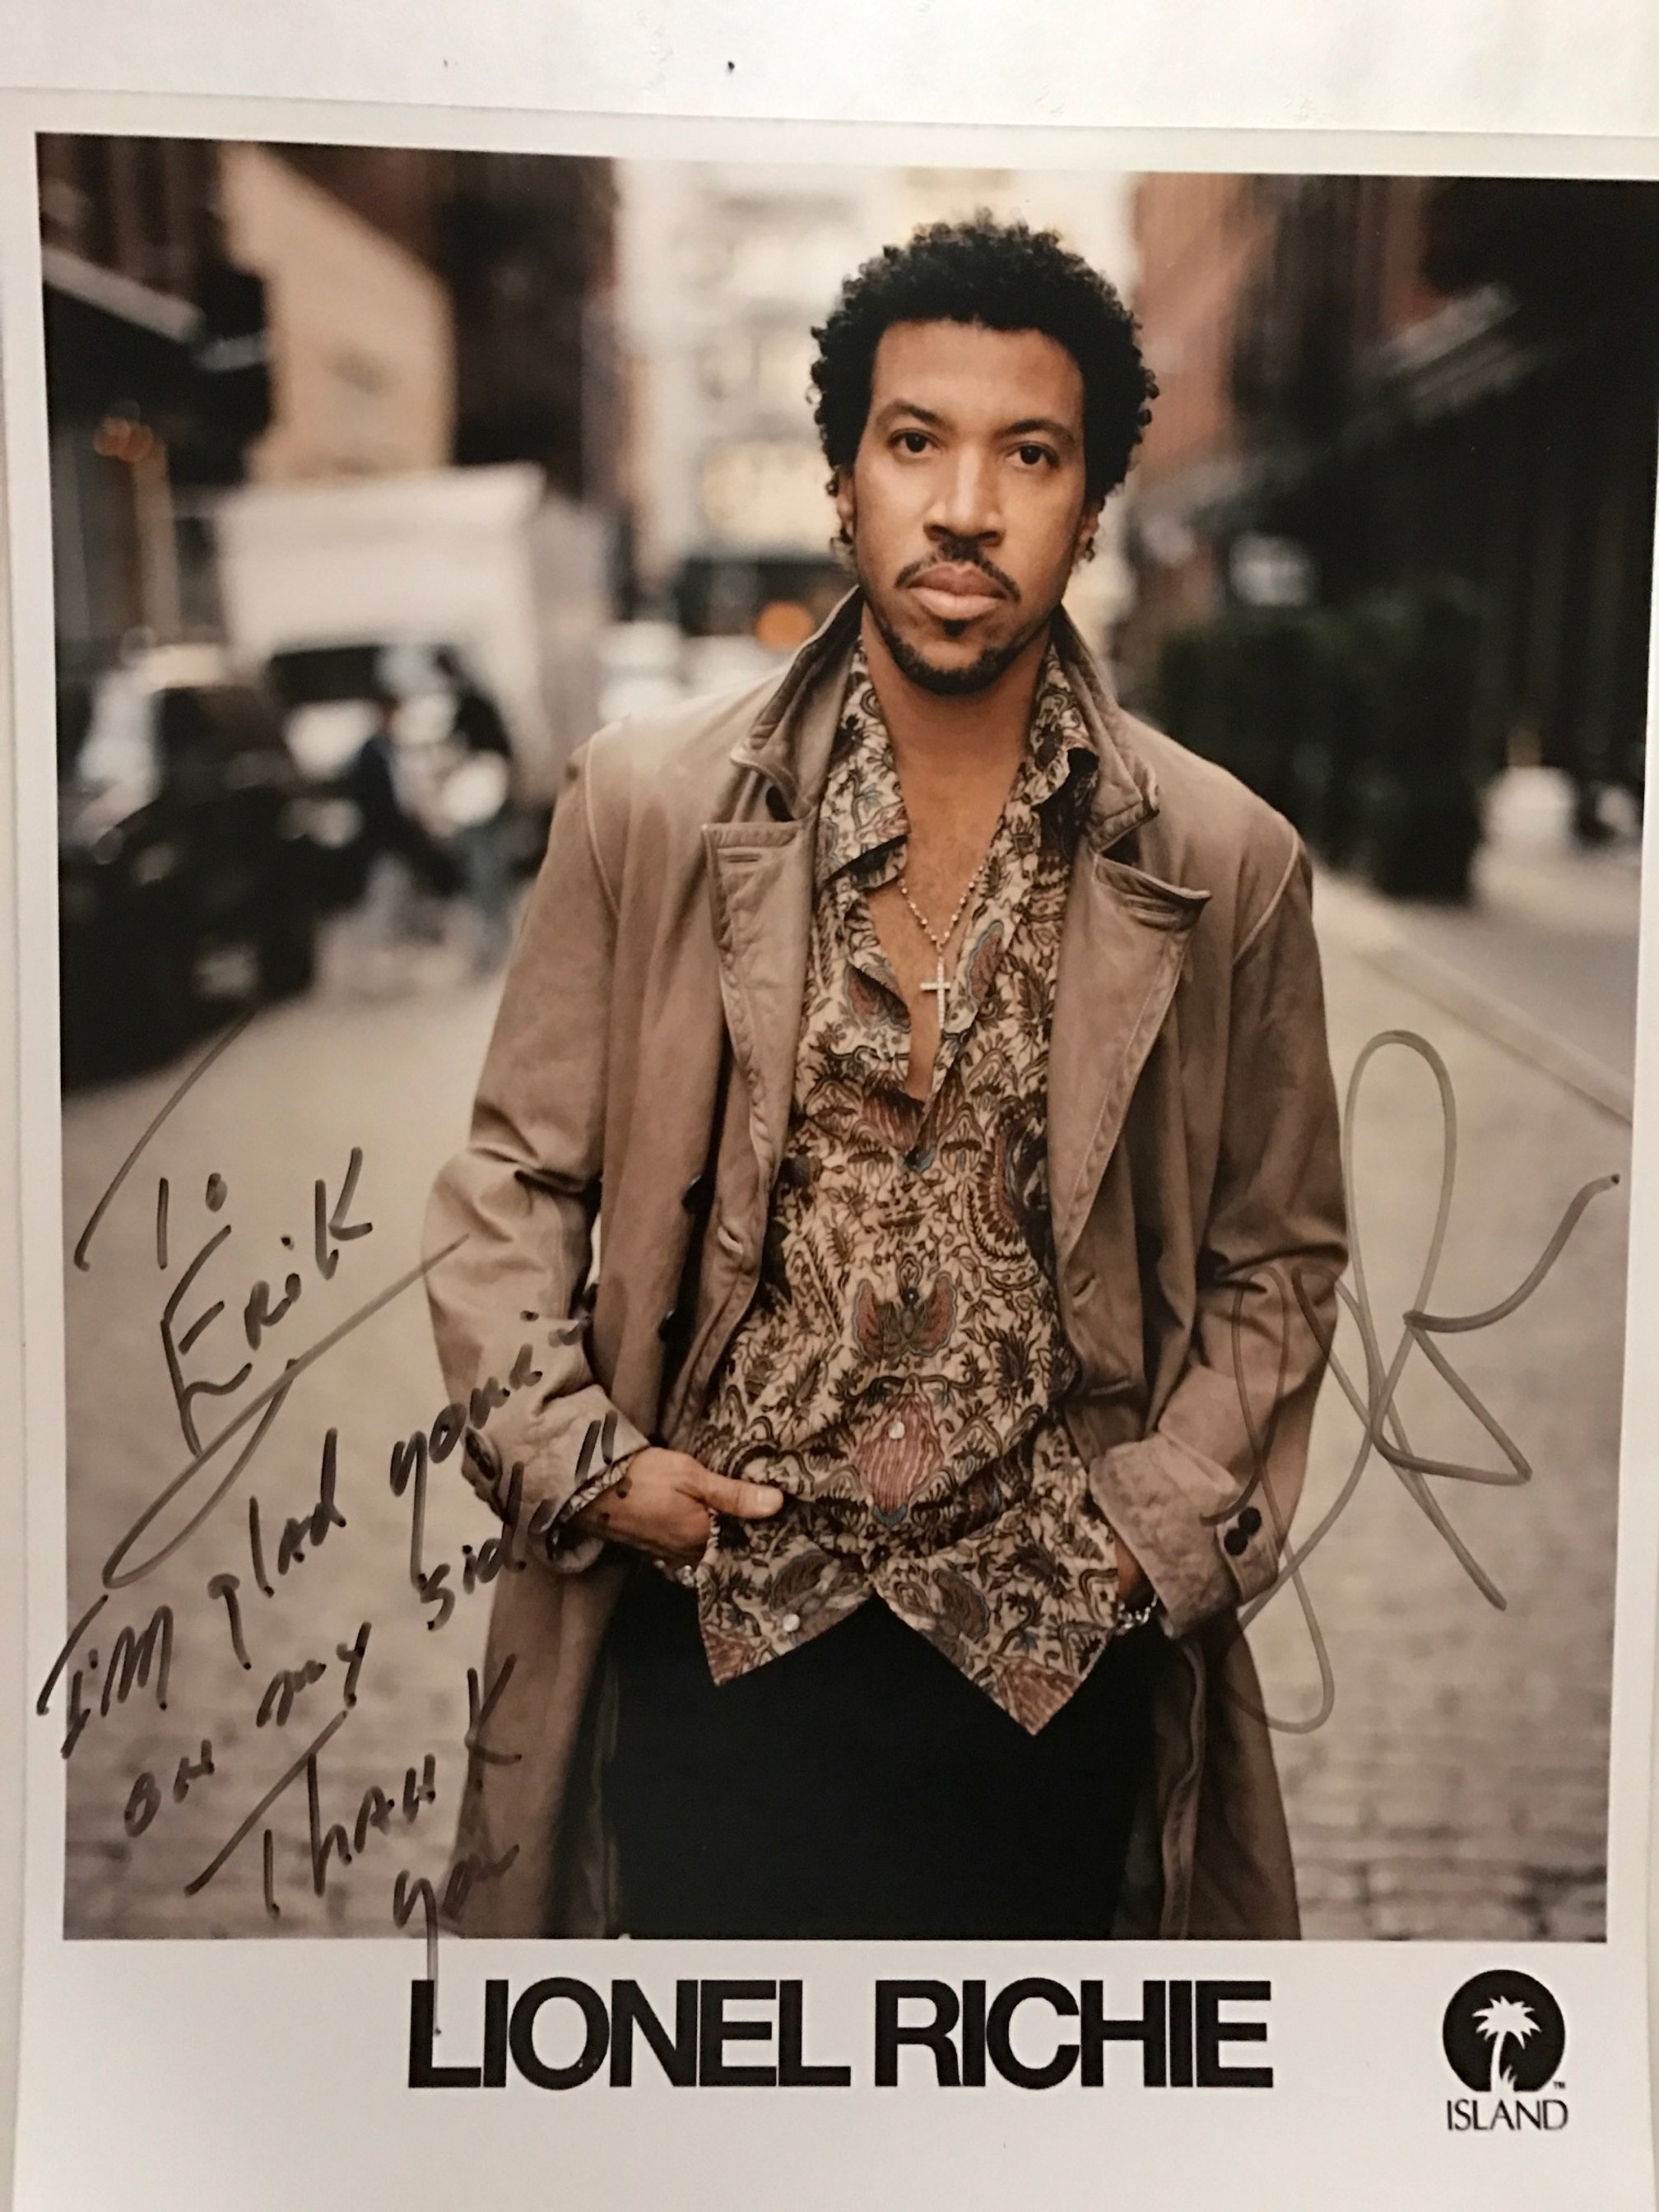 Lionel Richie photo signed.JPG